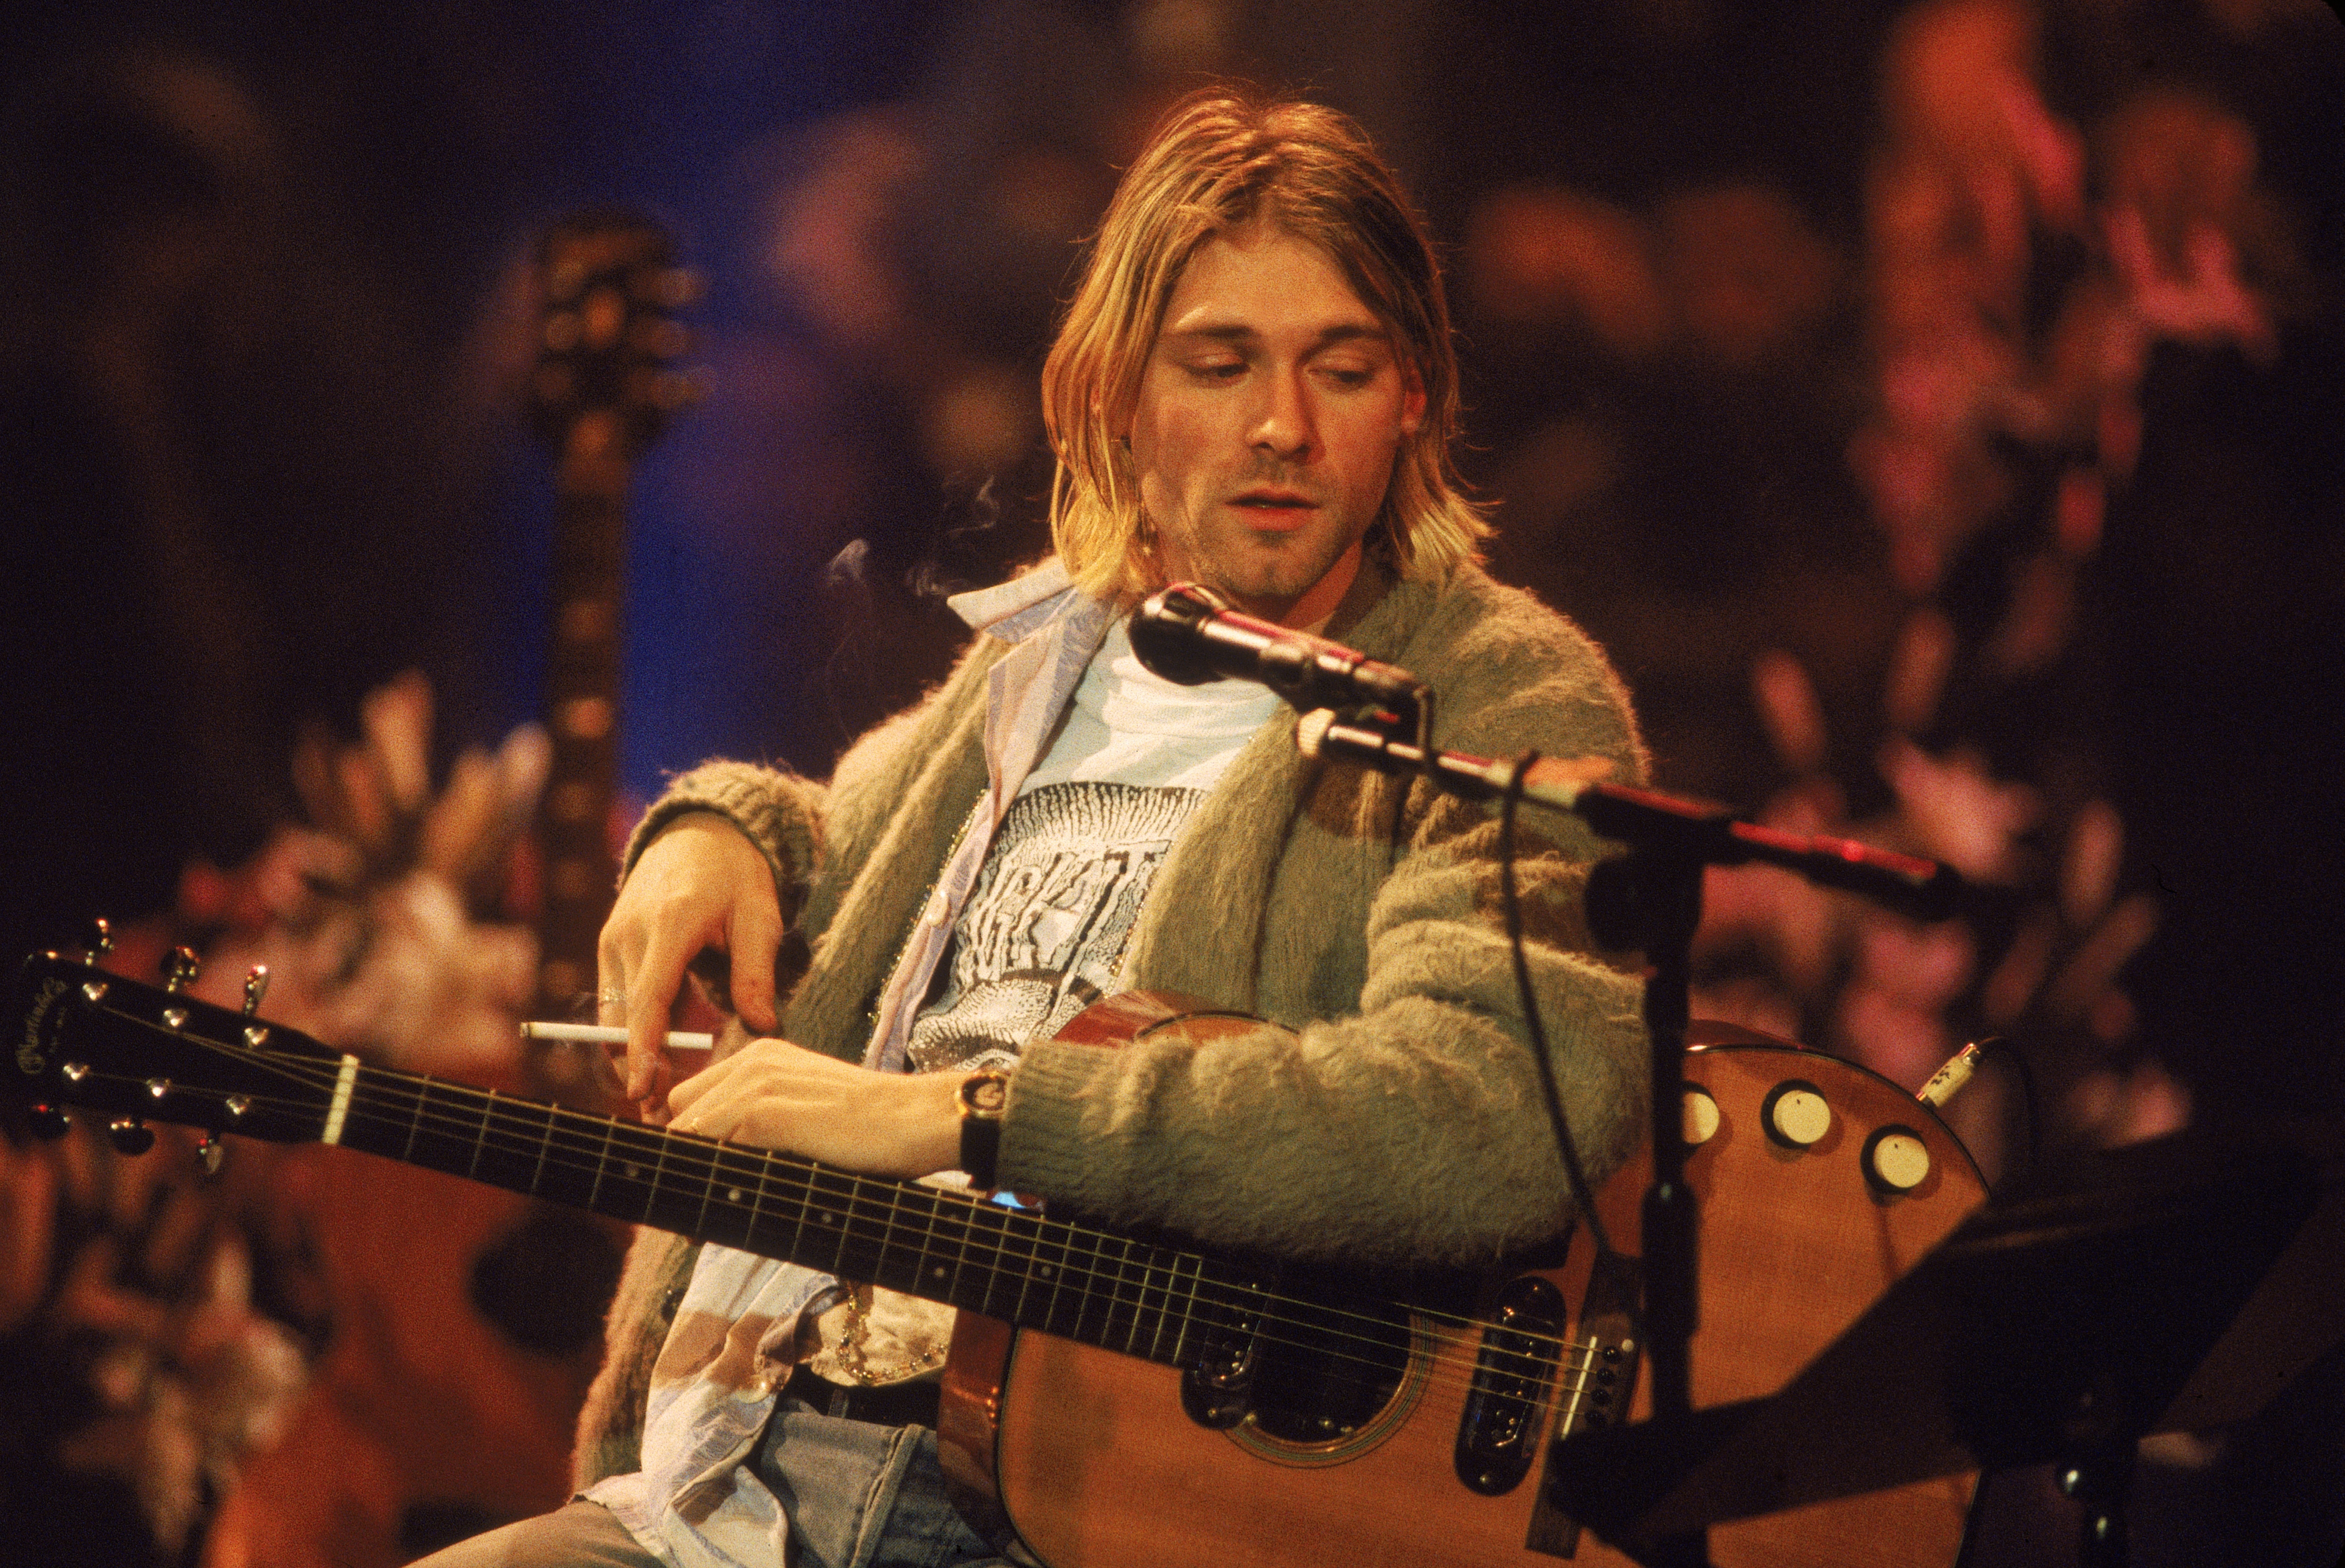 Hoy Kurt Cobain cumpliría 56 años. Se quitó la vida a los 27 años, el 5 de abril de 1994 (Photo by Frank Micelotta/Getty Images)